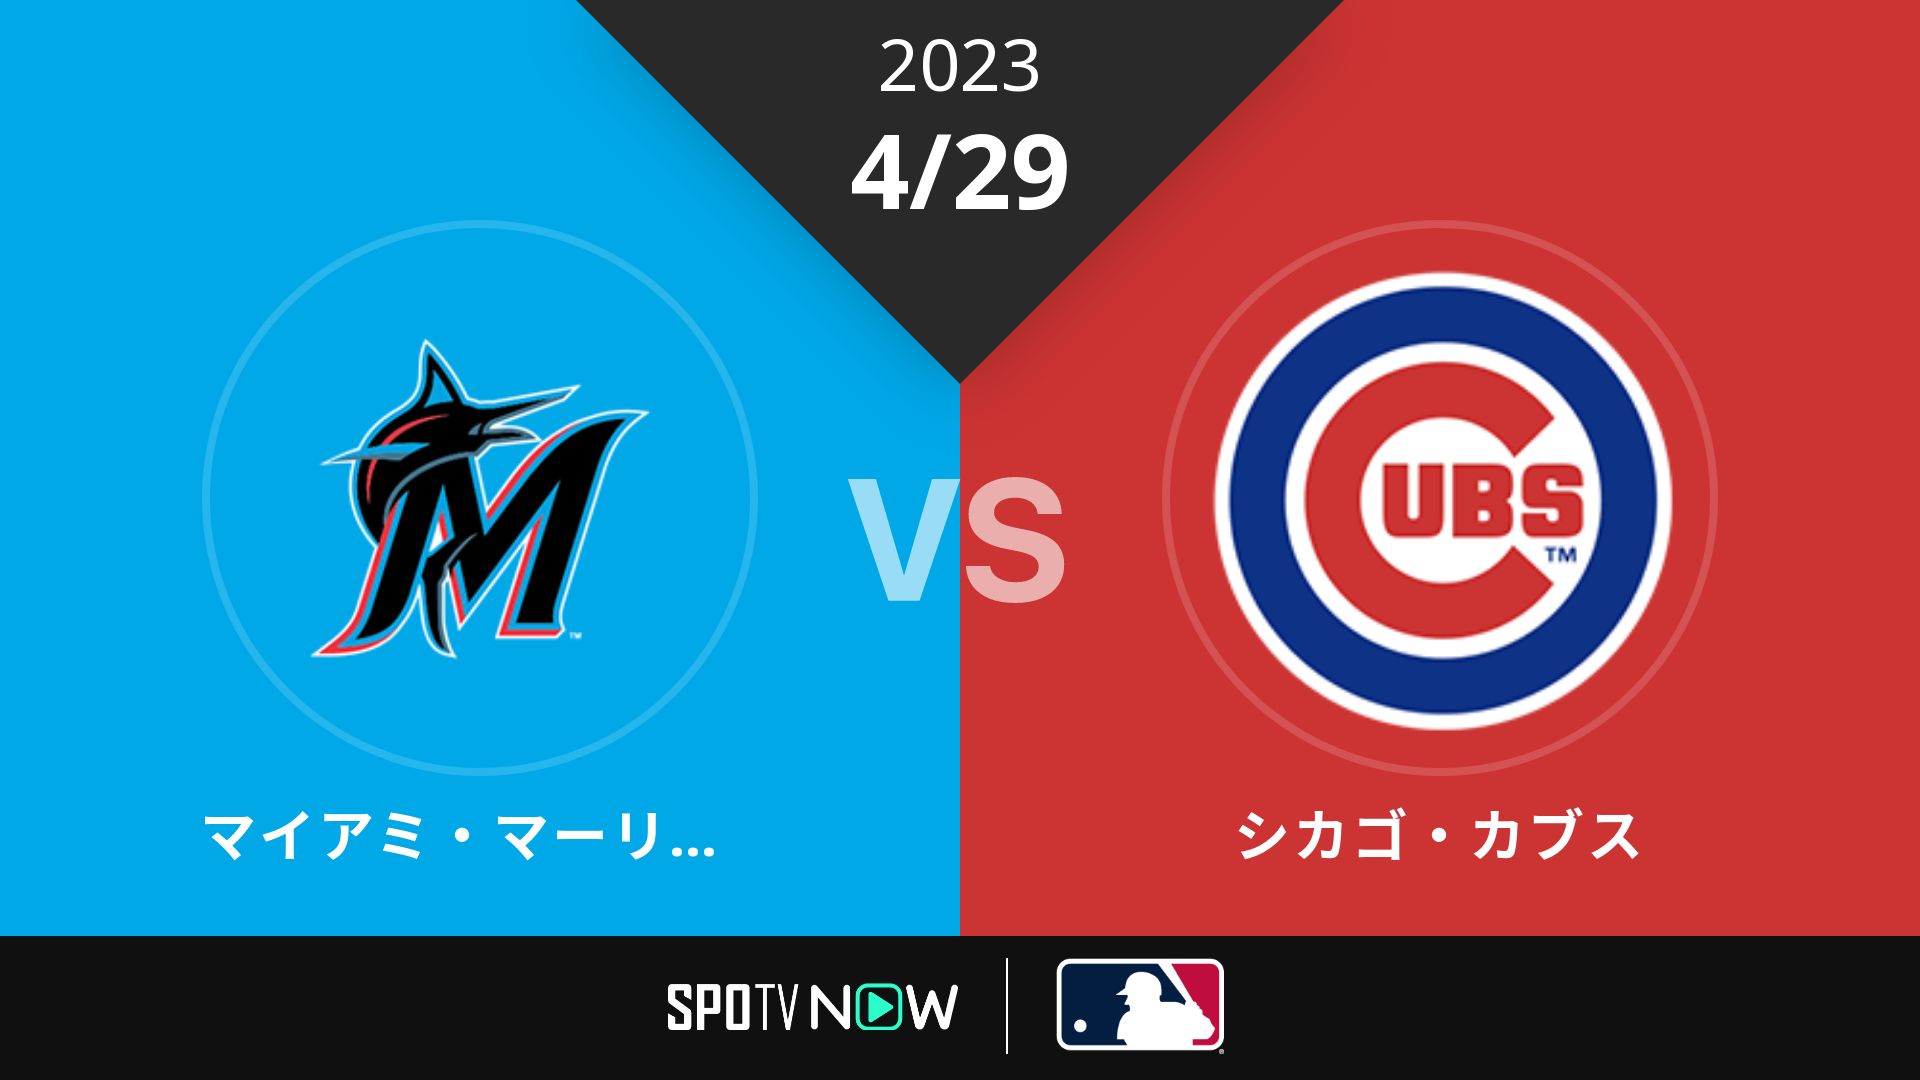 2023/4/29 マーリンズ vs カブス [MLB]